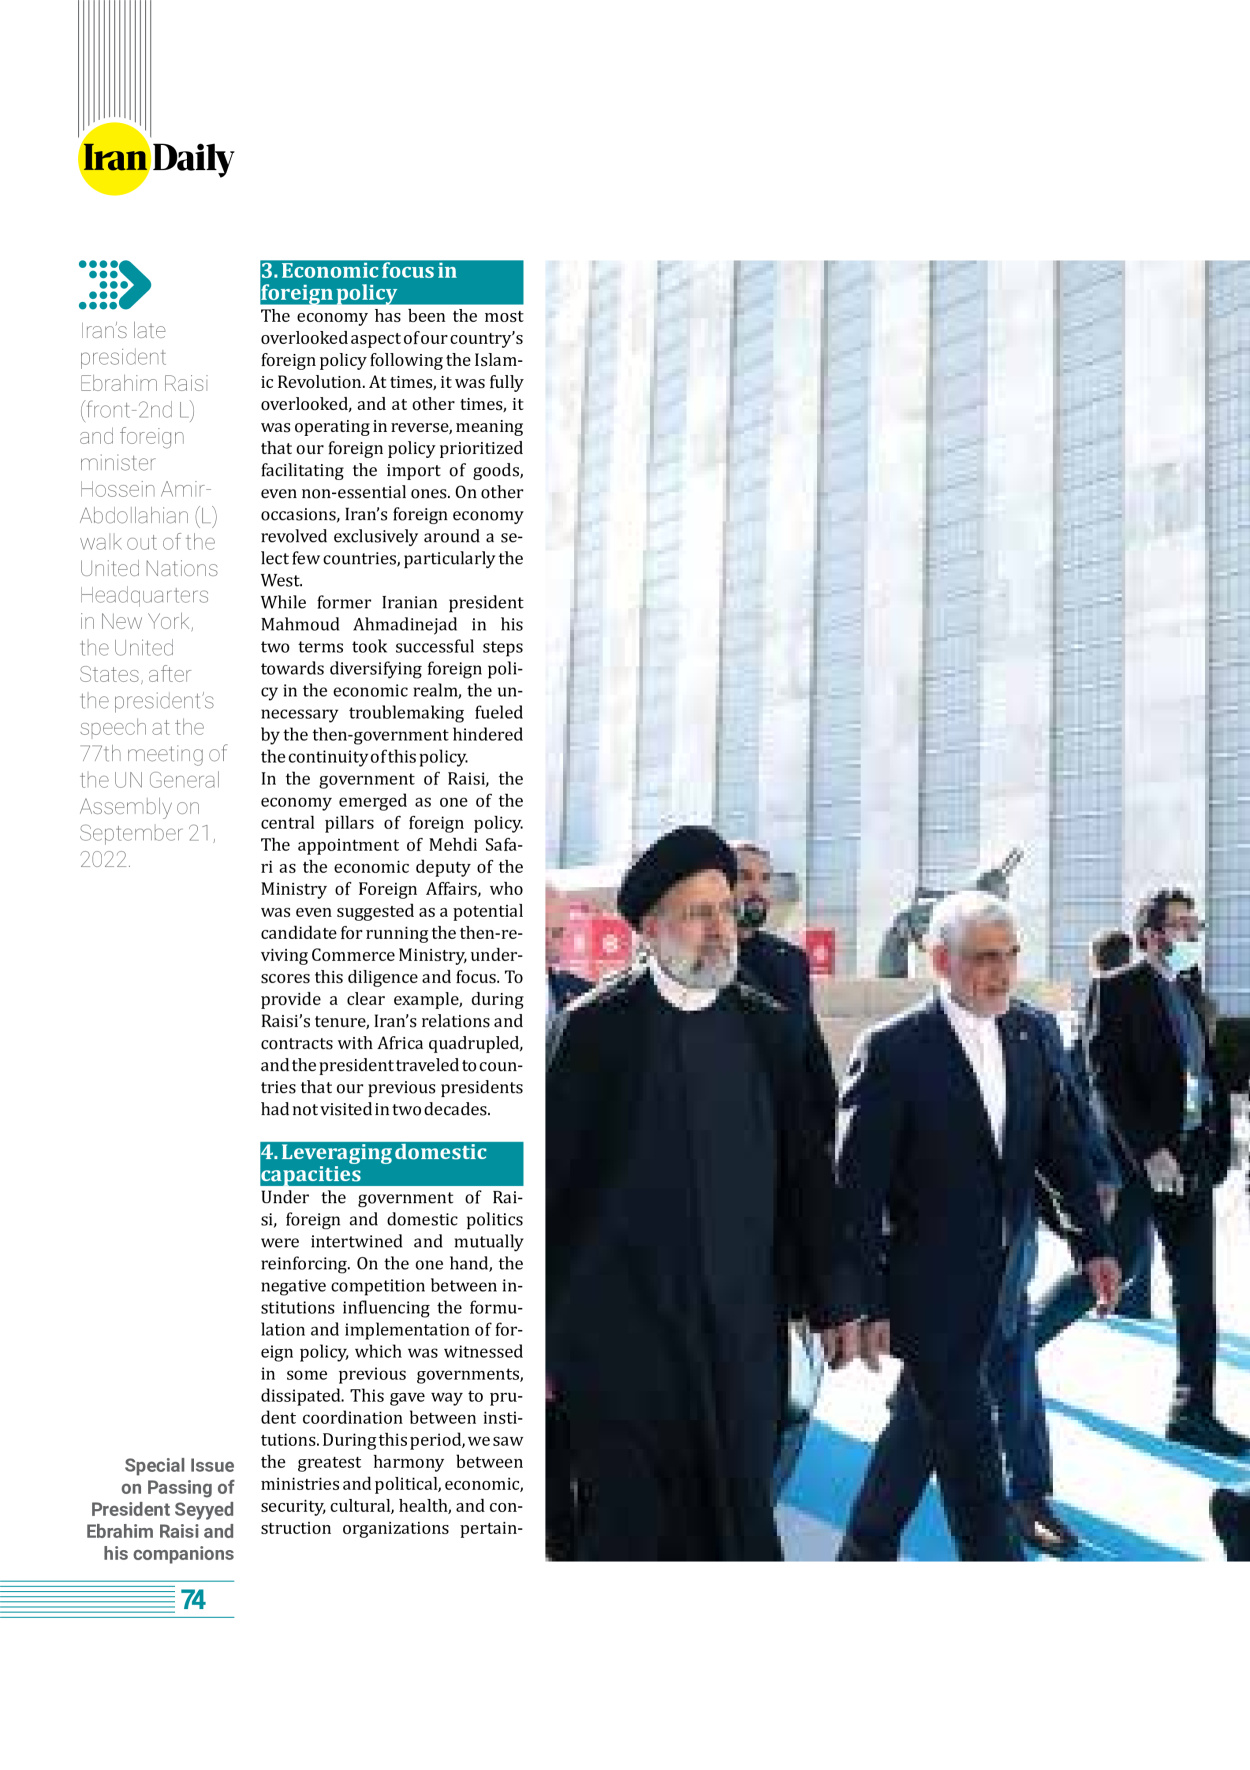 روزنامه ایران - ویژه نامه وِزه نامه چهلم شهید رییسی( انگلیسی) - ۱۷ تیر ۱۴۰۳ - صفحه ۷۴